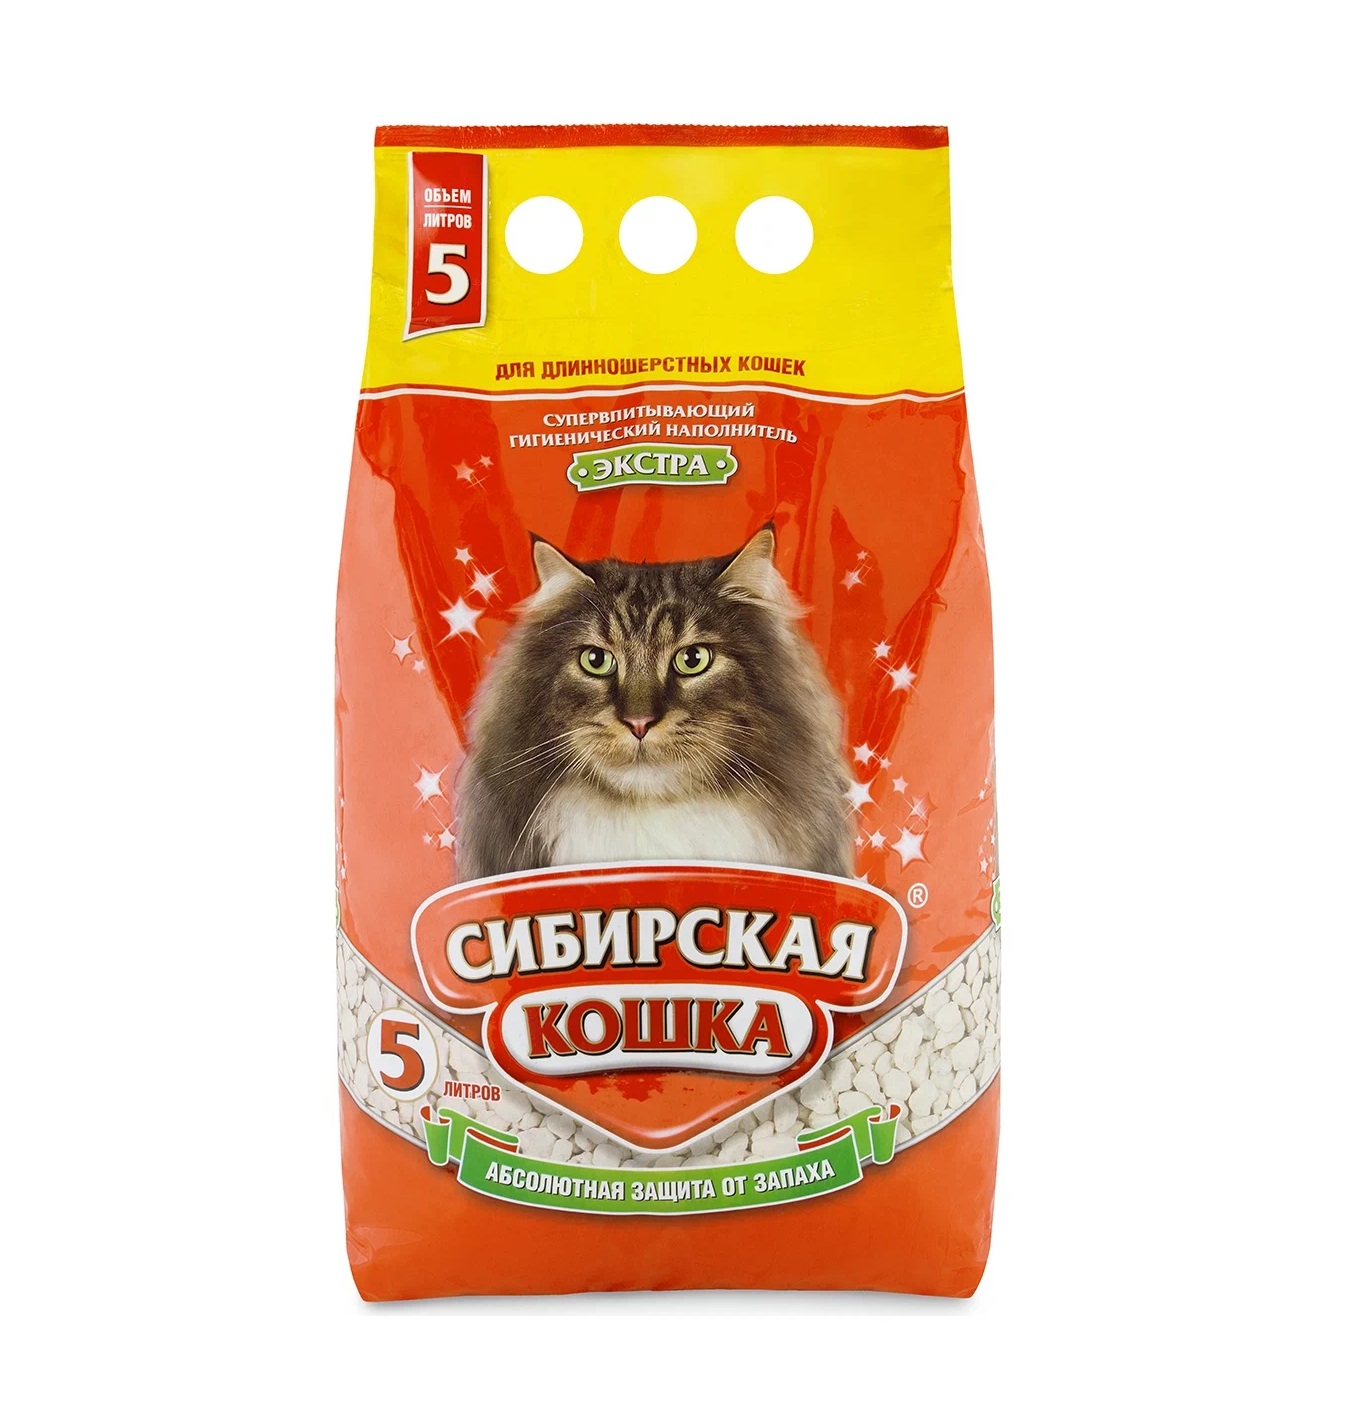 Сибирская кошка "Экстра" впитывающий, 5л